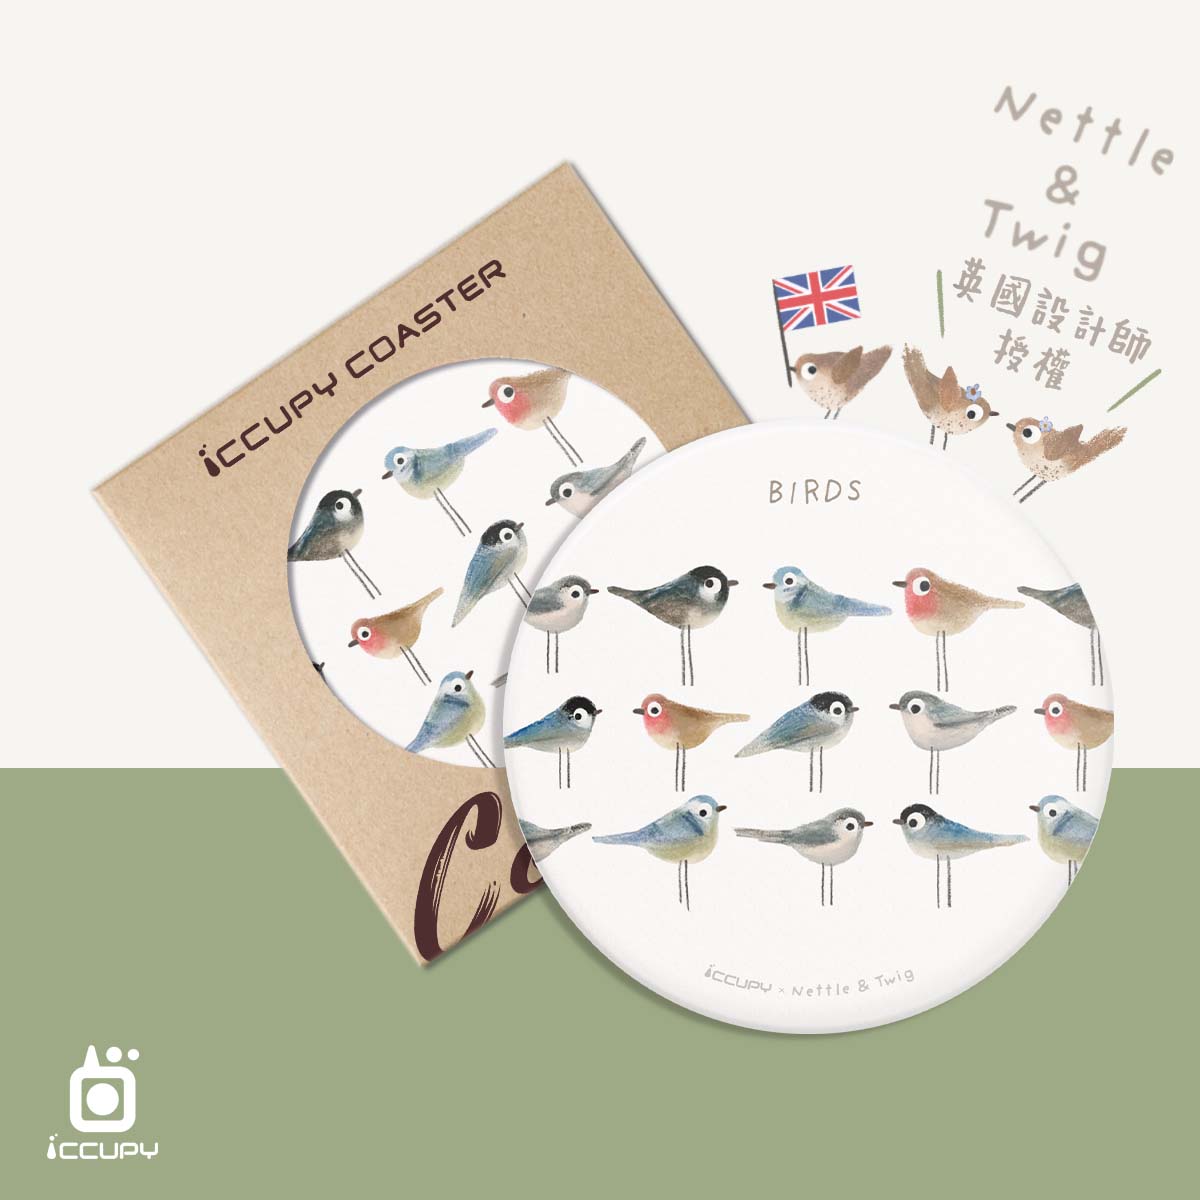 【森森物語】NETTLE & TWIG英國授權︱iCCUPY COASTER 陶瓷防滑杯墊-鳥兒們